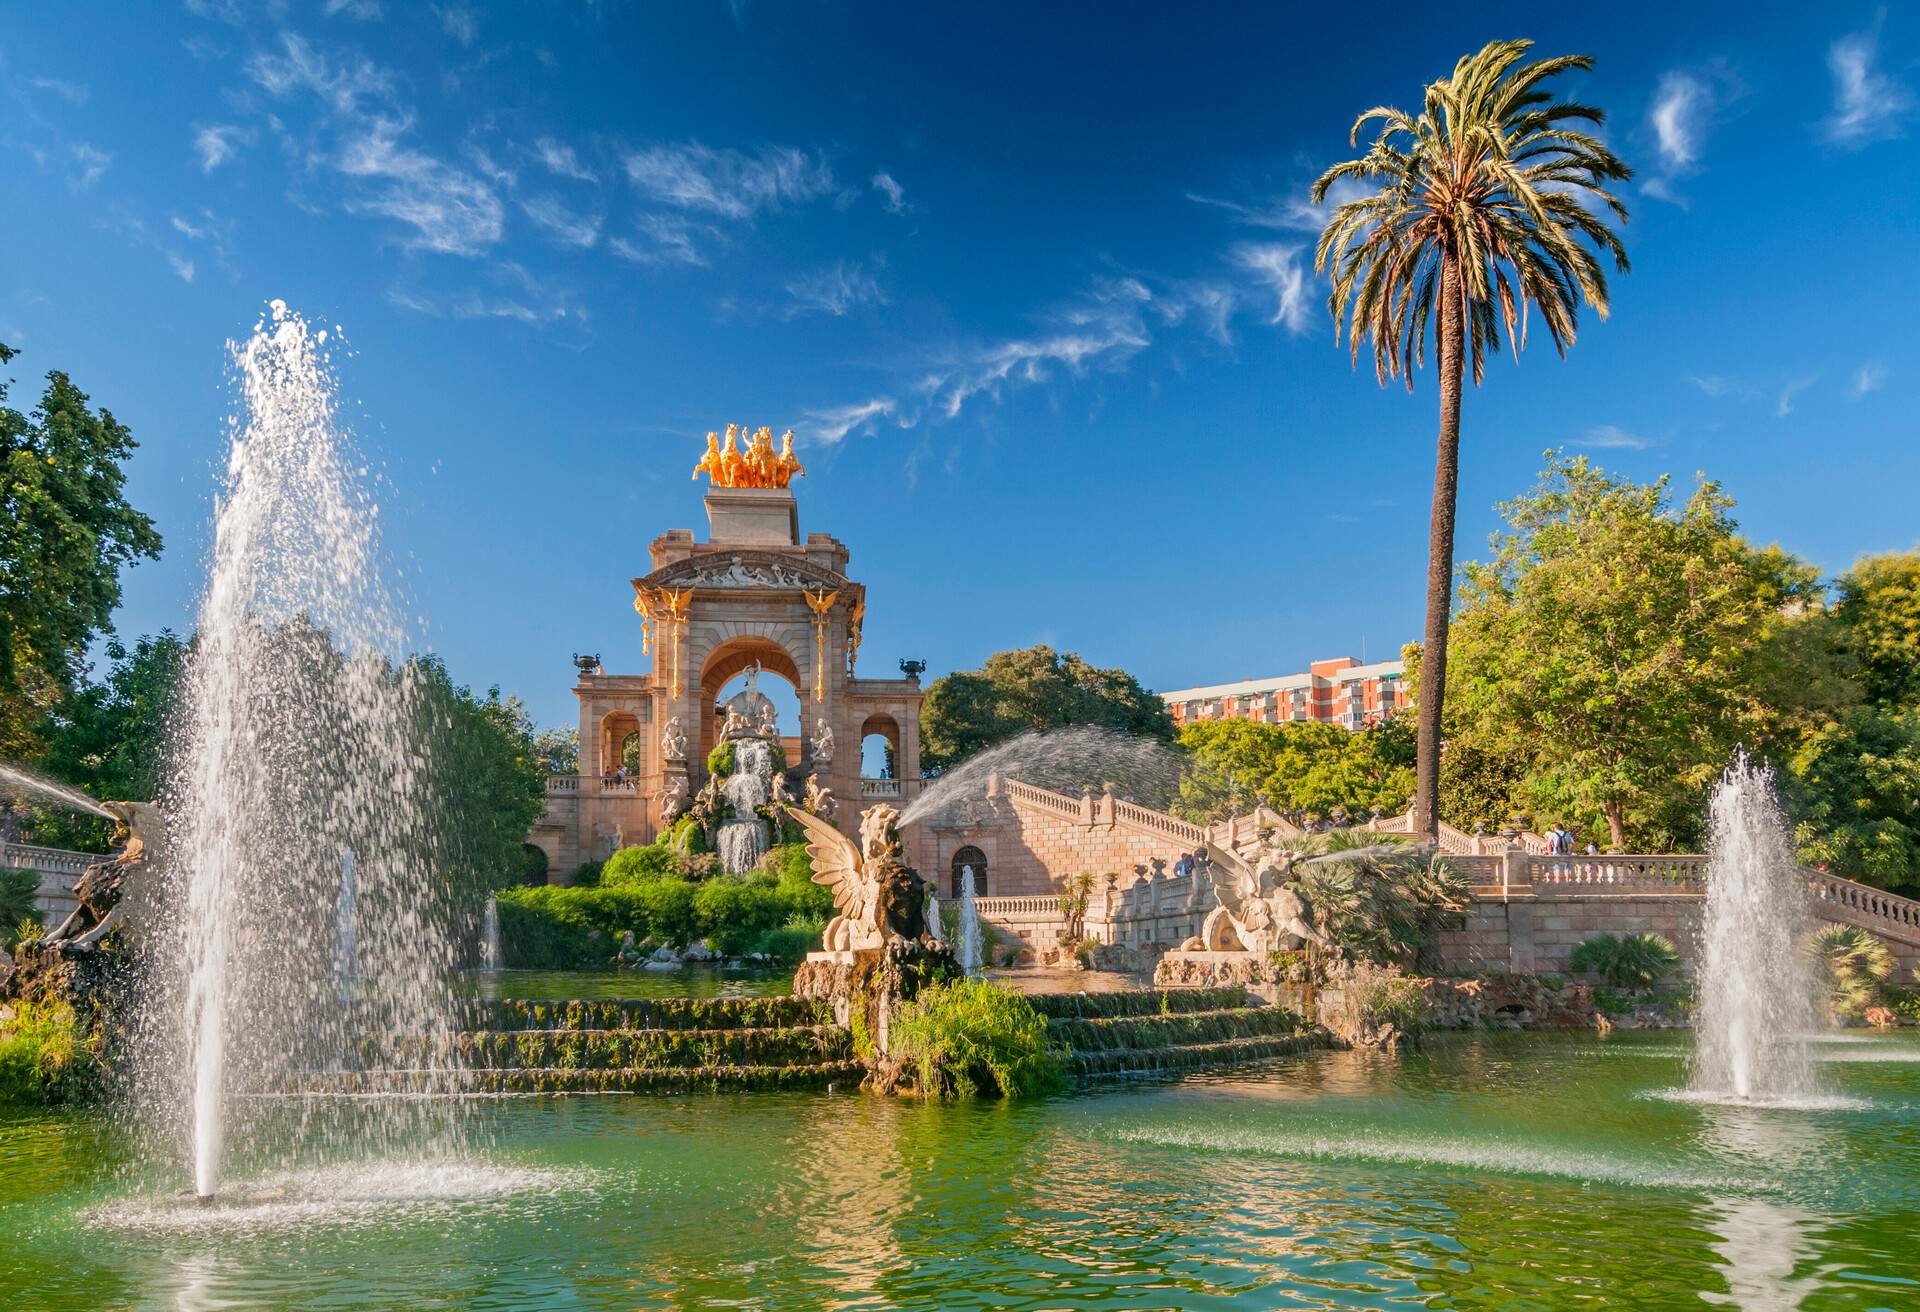 Fountain of Parc de la Ciutadella in Barcelona, Spain.